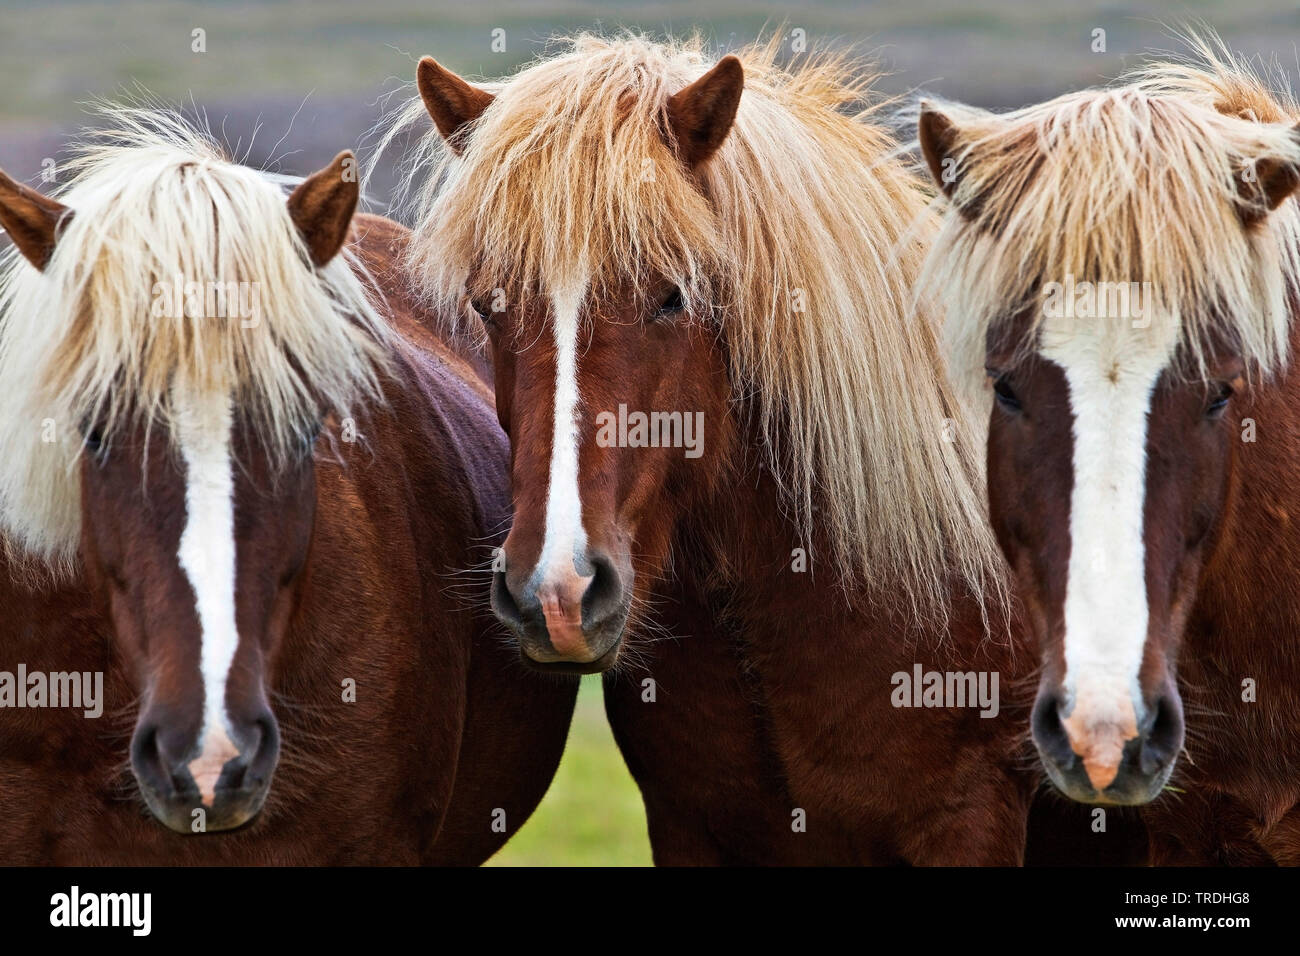 Islandic horse, Icelandic horse, Iceland pony (Equus przewalskii f. caballus), three Islandic horses standing side by side, portrait, Iceland Stock Photo